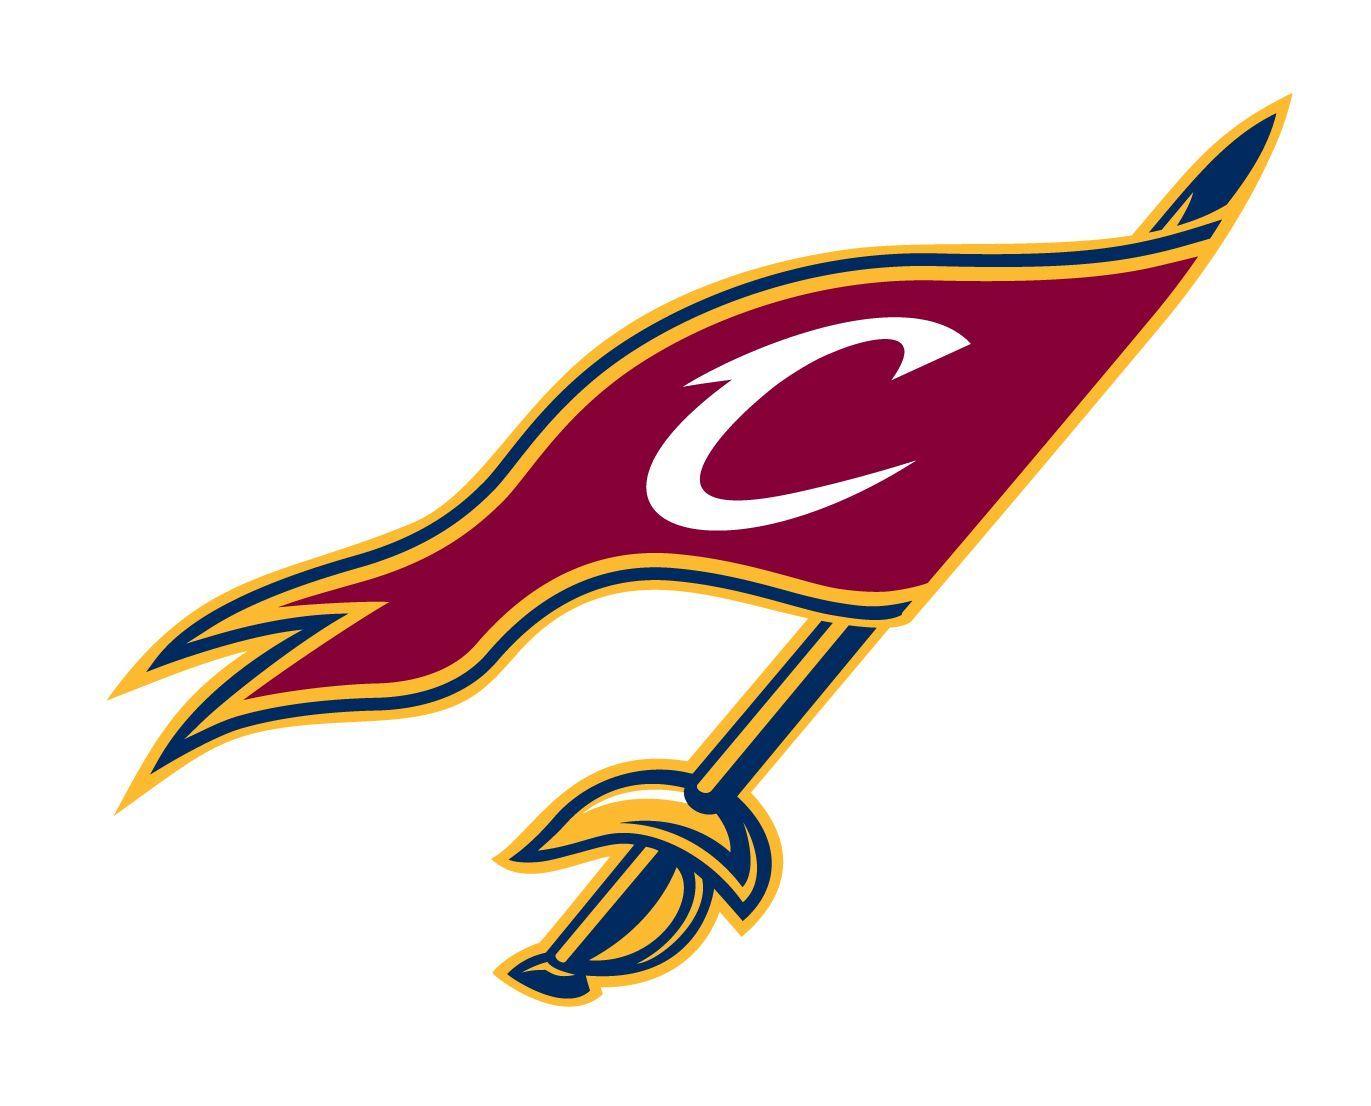 Cavs Logo - Cleveland Cavaliers Secondary Flag Logo. Cavs. NBA